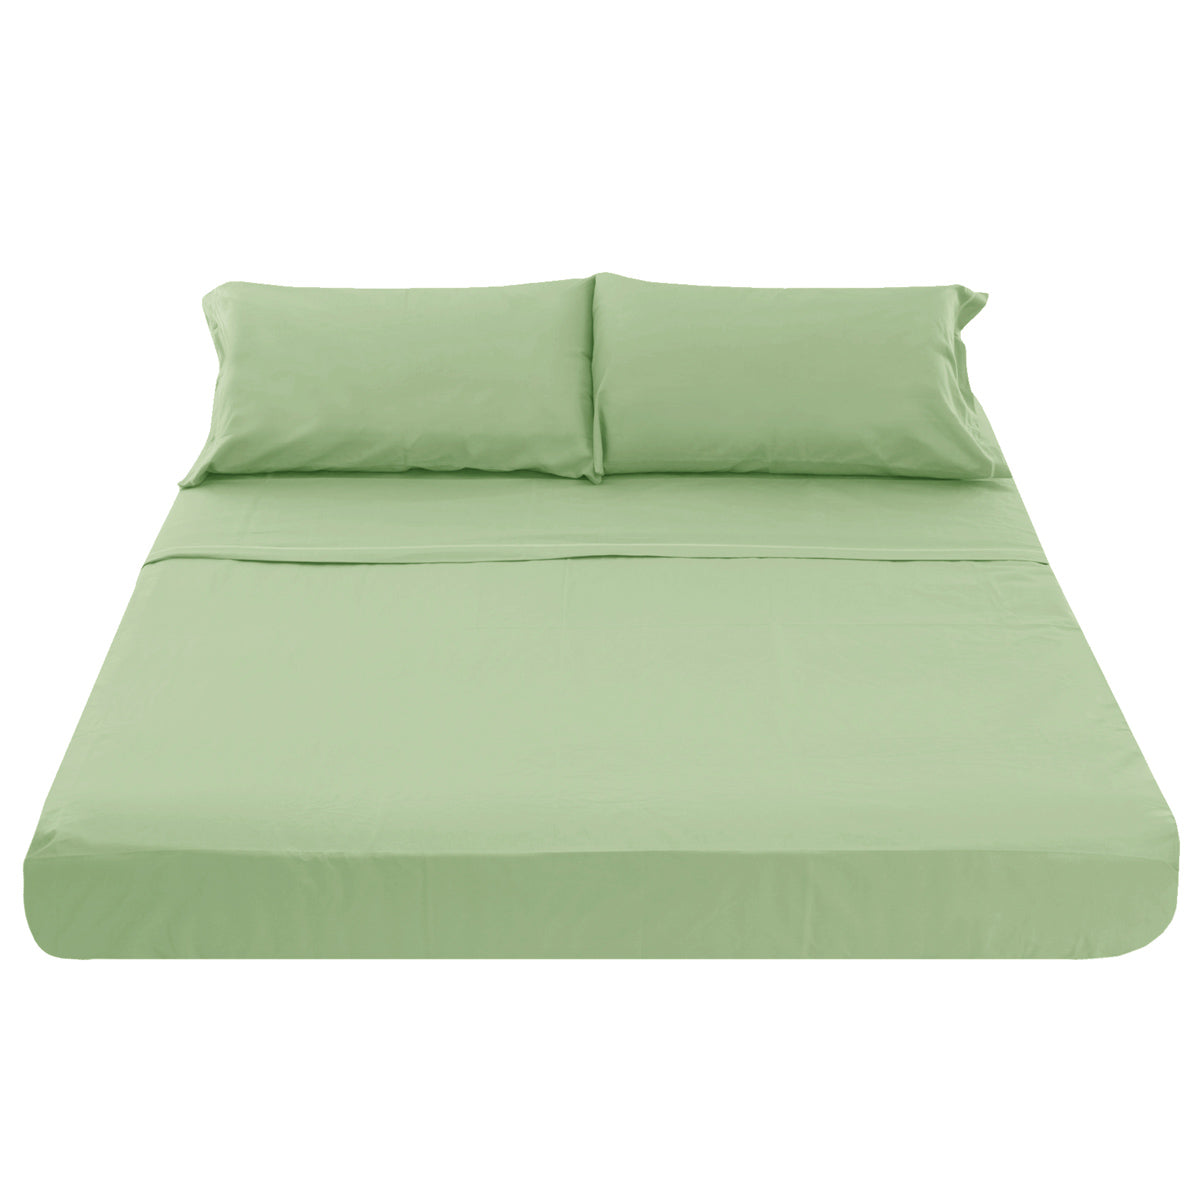 Coppia lenzuola matrimoniale 2 piazze in tessuto di puro cotone tinta unita colore verde salvia